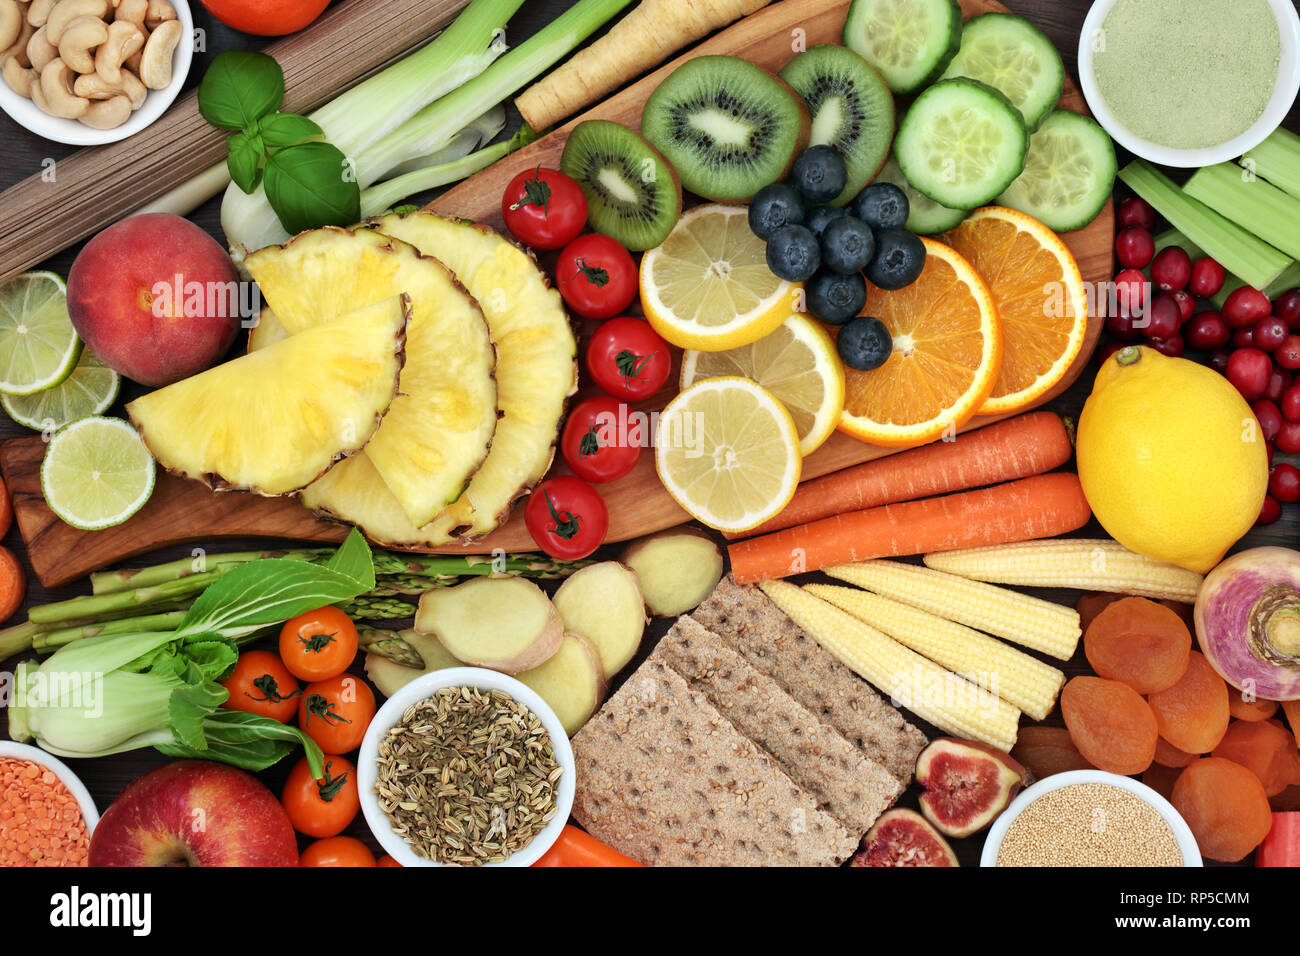 Gesundheit Nahrung für Gewicht-Verlust-Konzept mit Obst und Gemüse, Vollkorn Cracker, Körner, Hülsenfrüchte, Vollkorn Nudeln, Kräutern, Gewürzen und Nüssen. Stockfoto